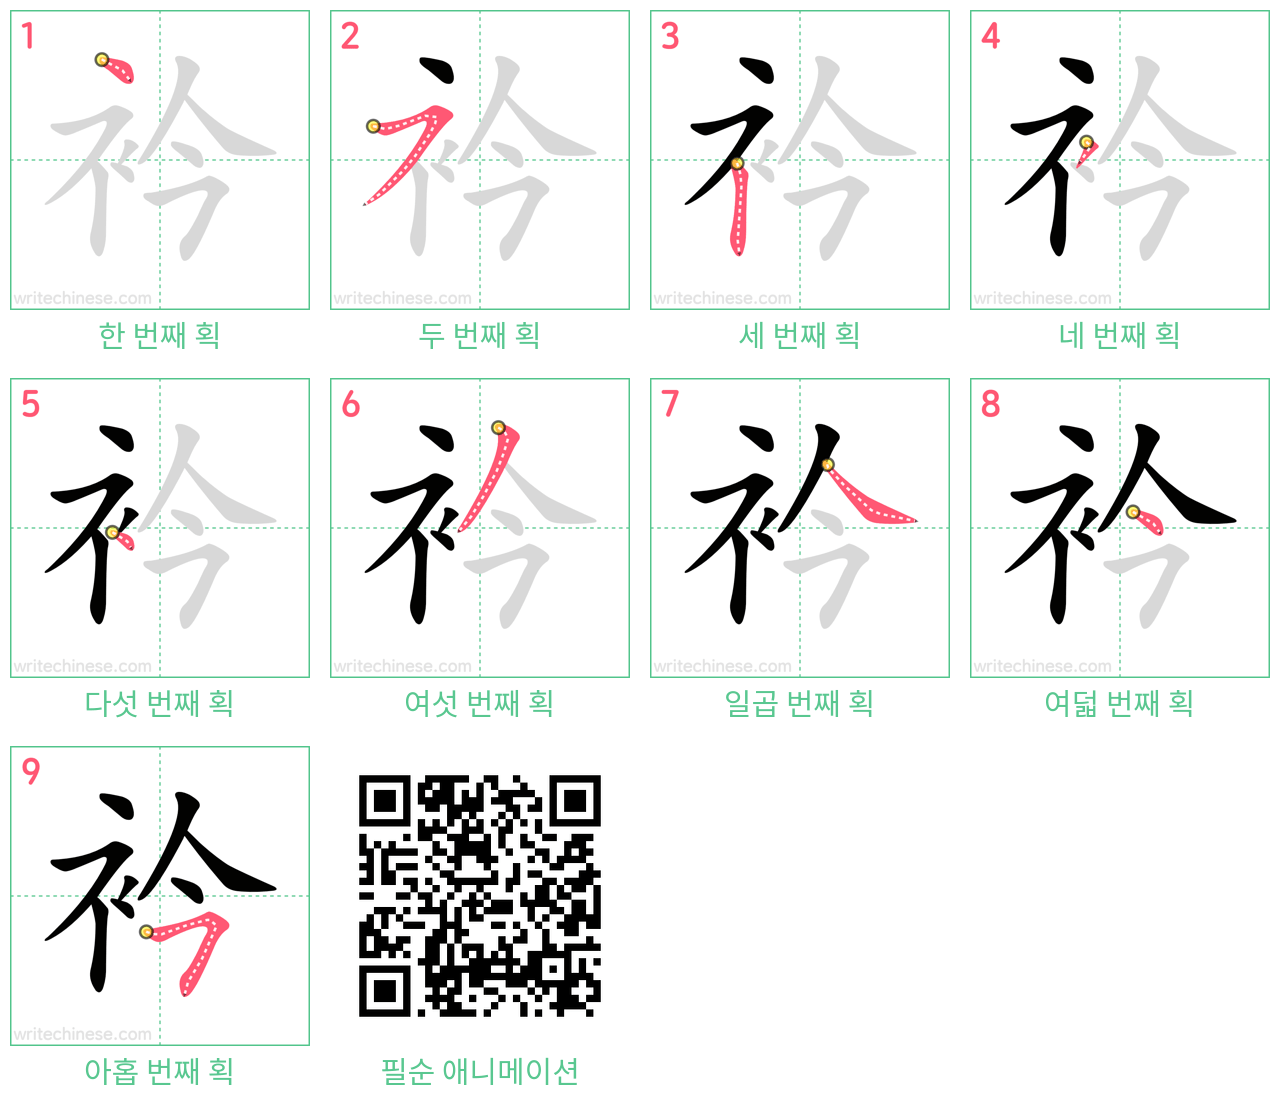 衿 step-by-step stroke order diagrams